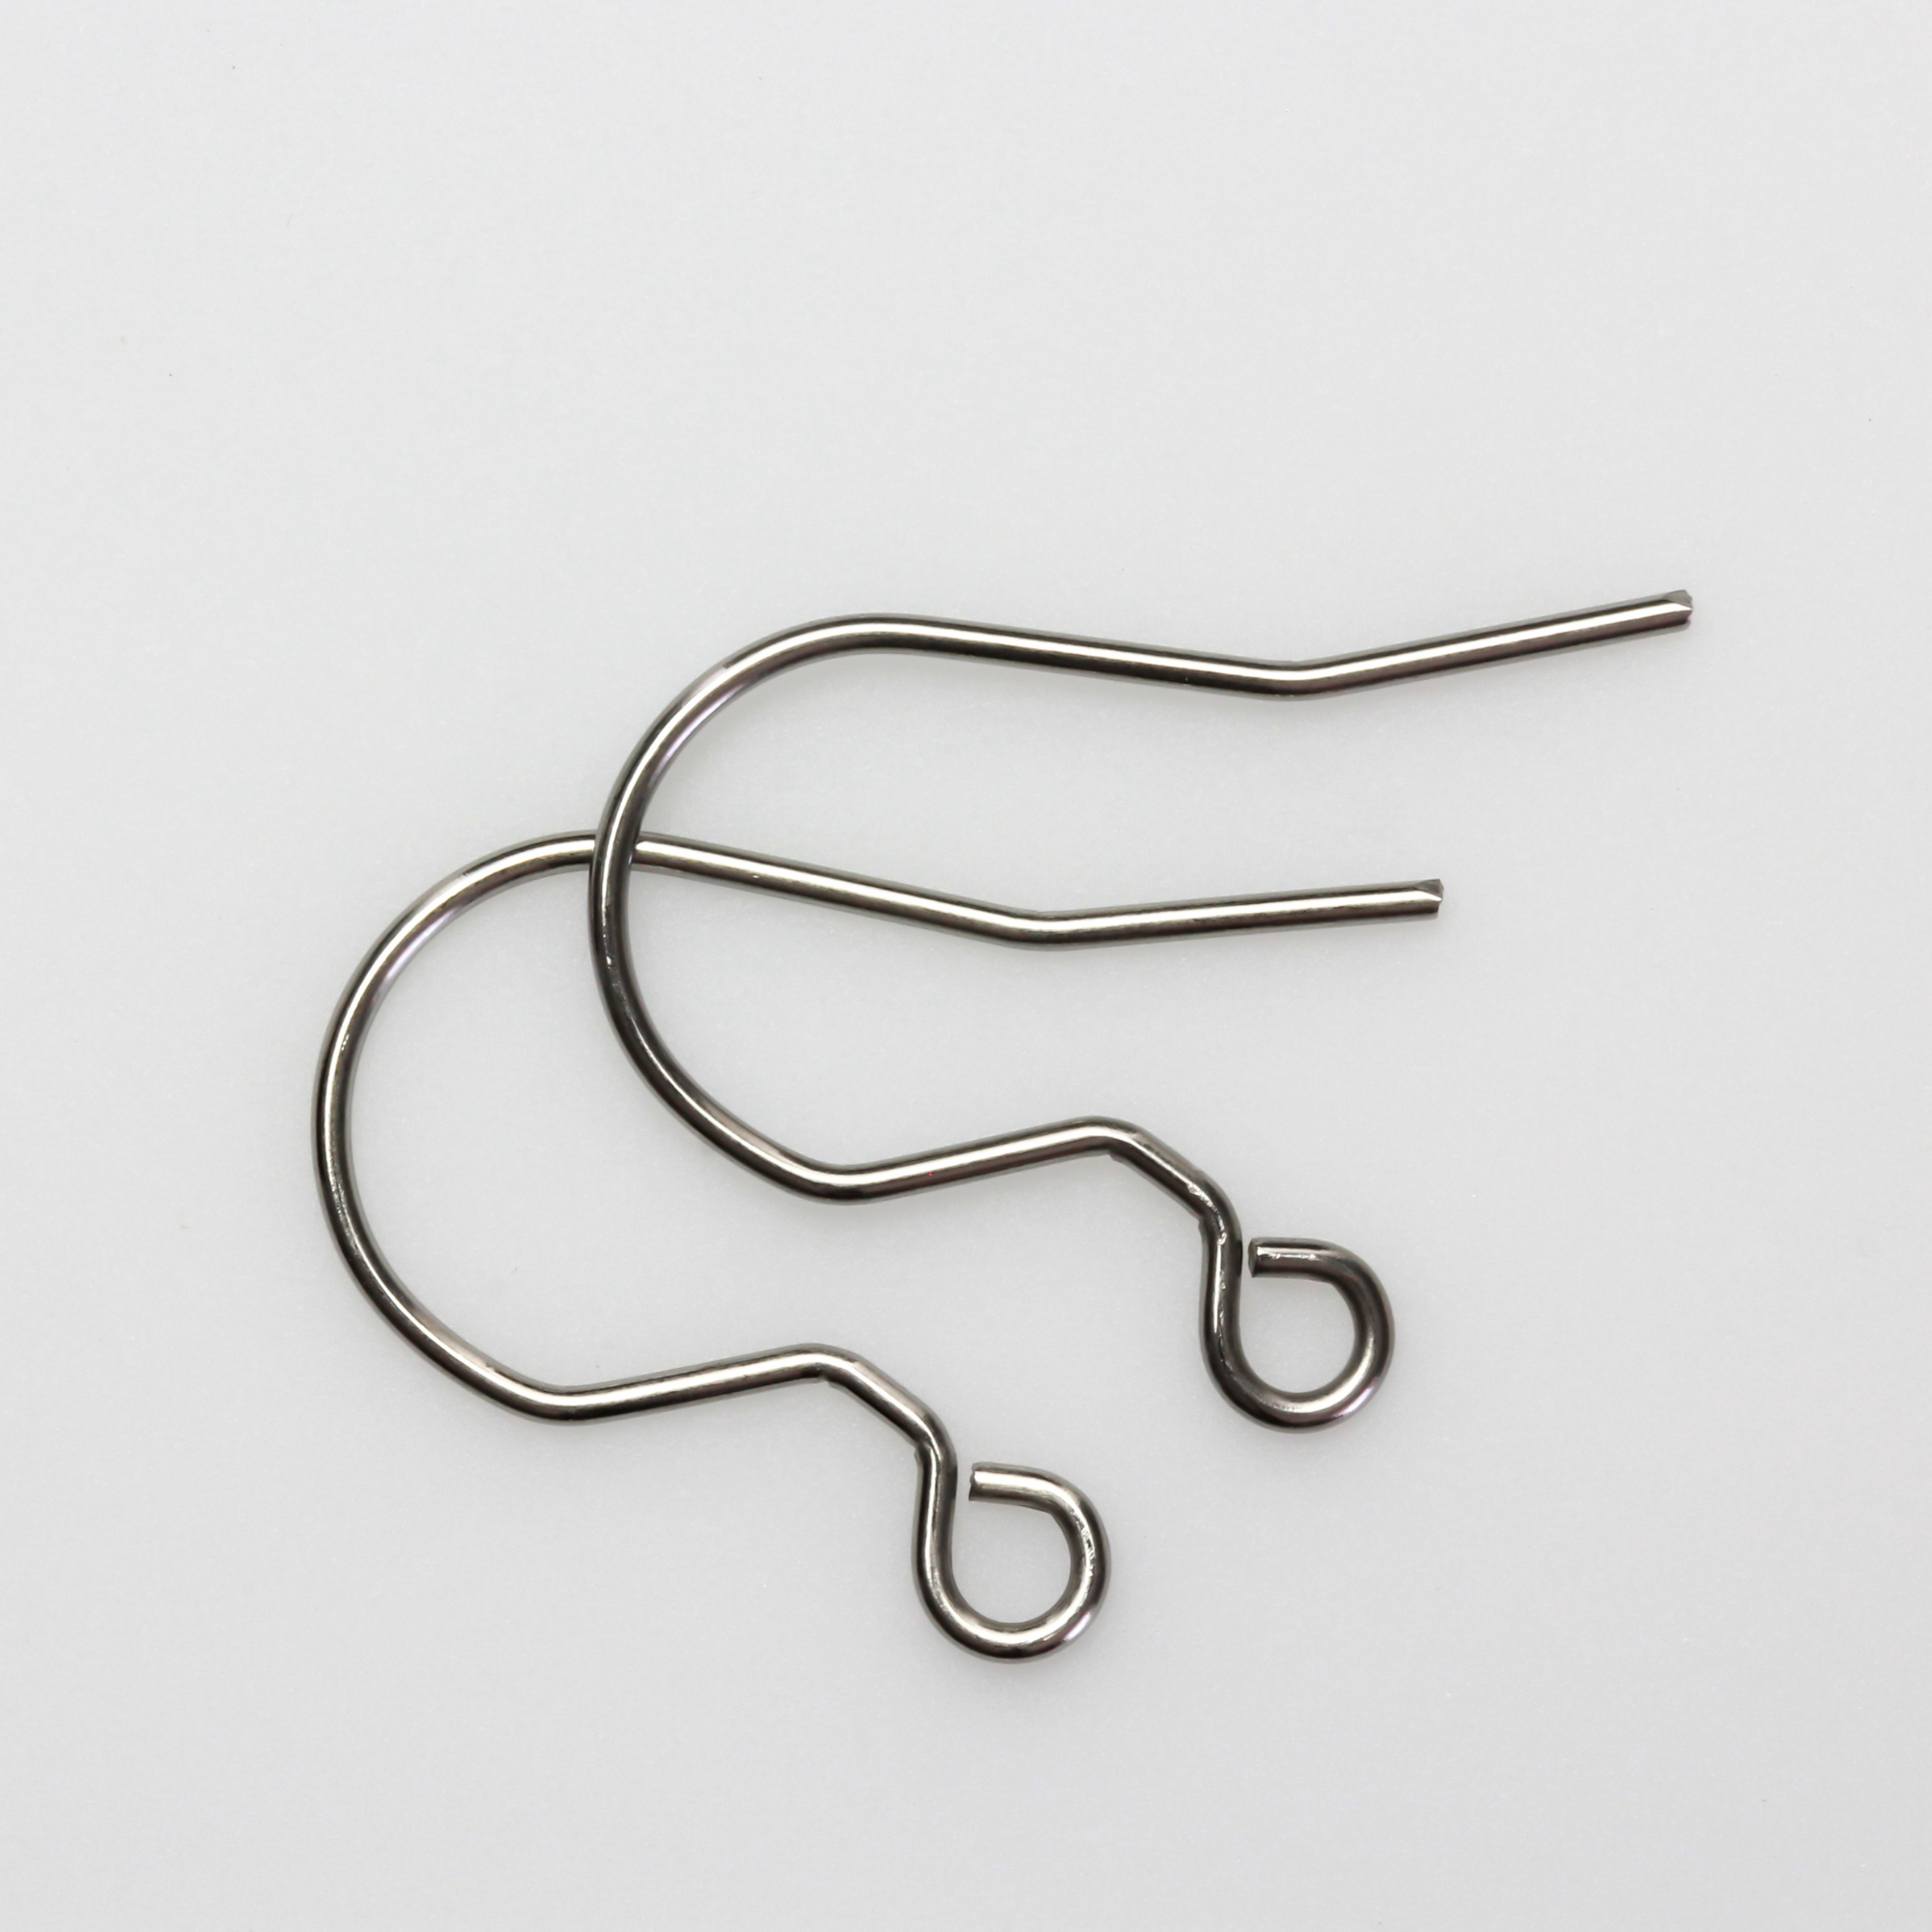 Stainless Steel Earring Hooks with Horizontal Loop - 20 gauge, 30